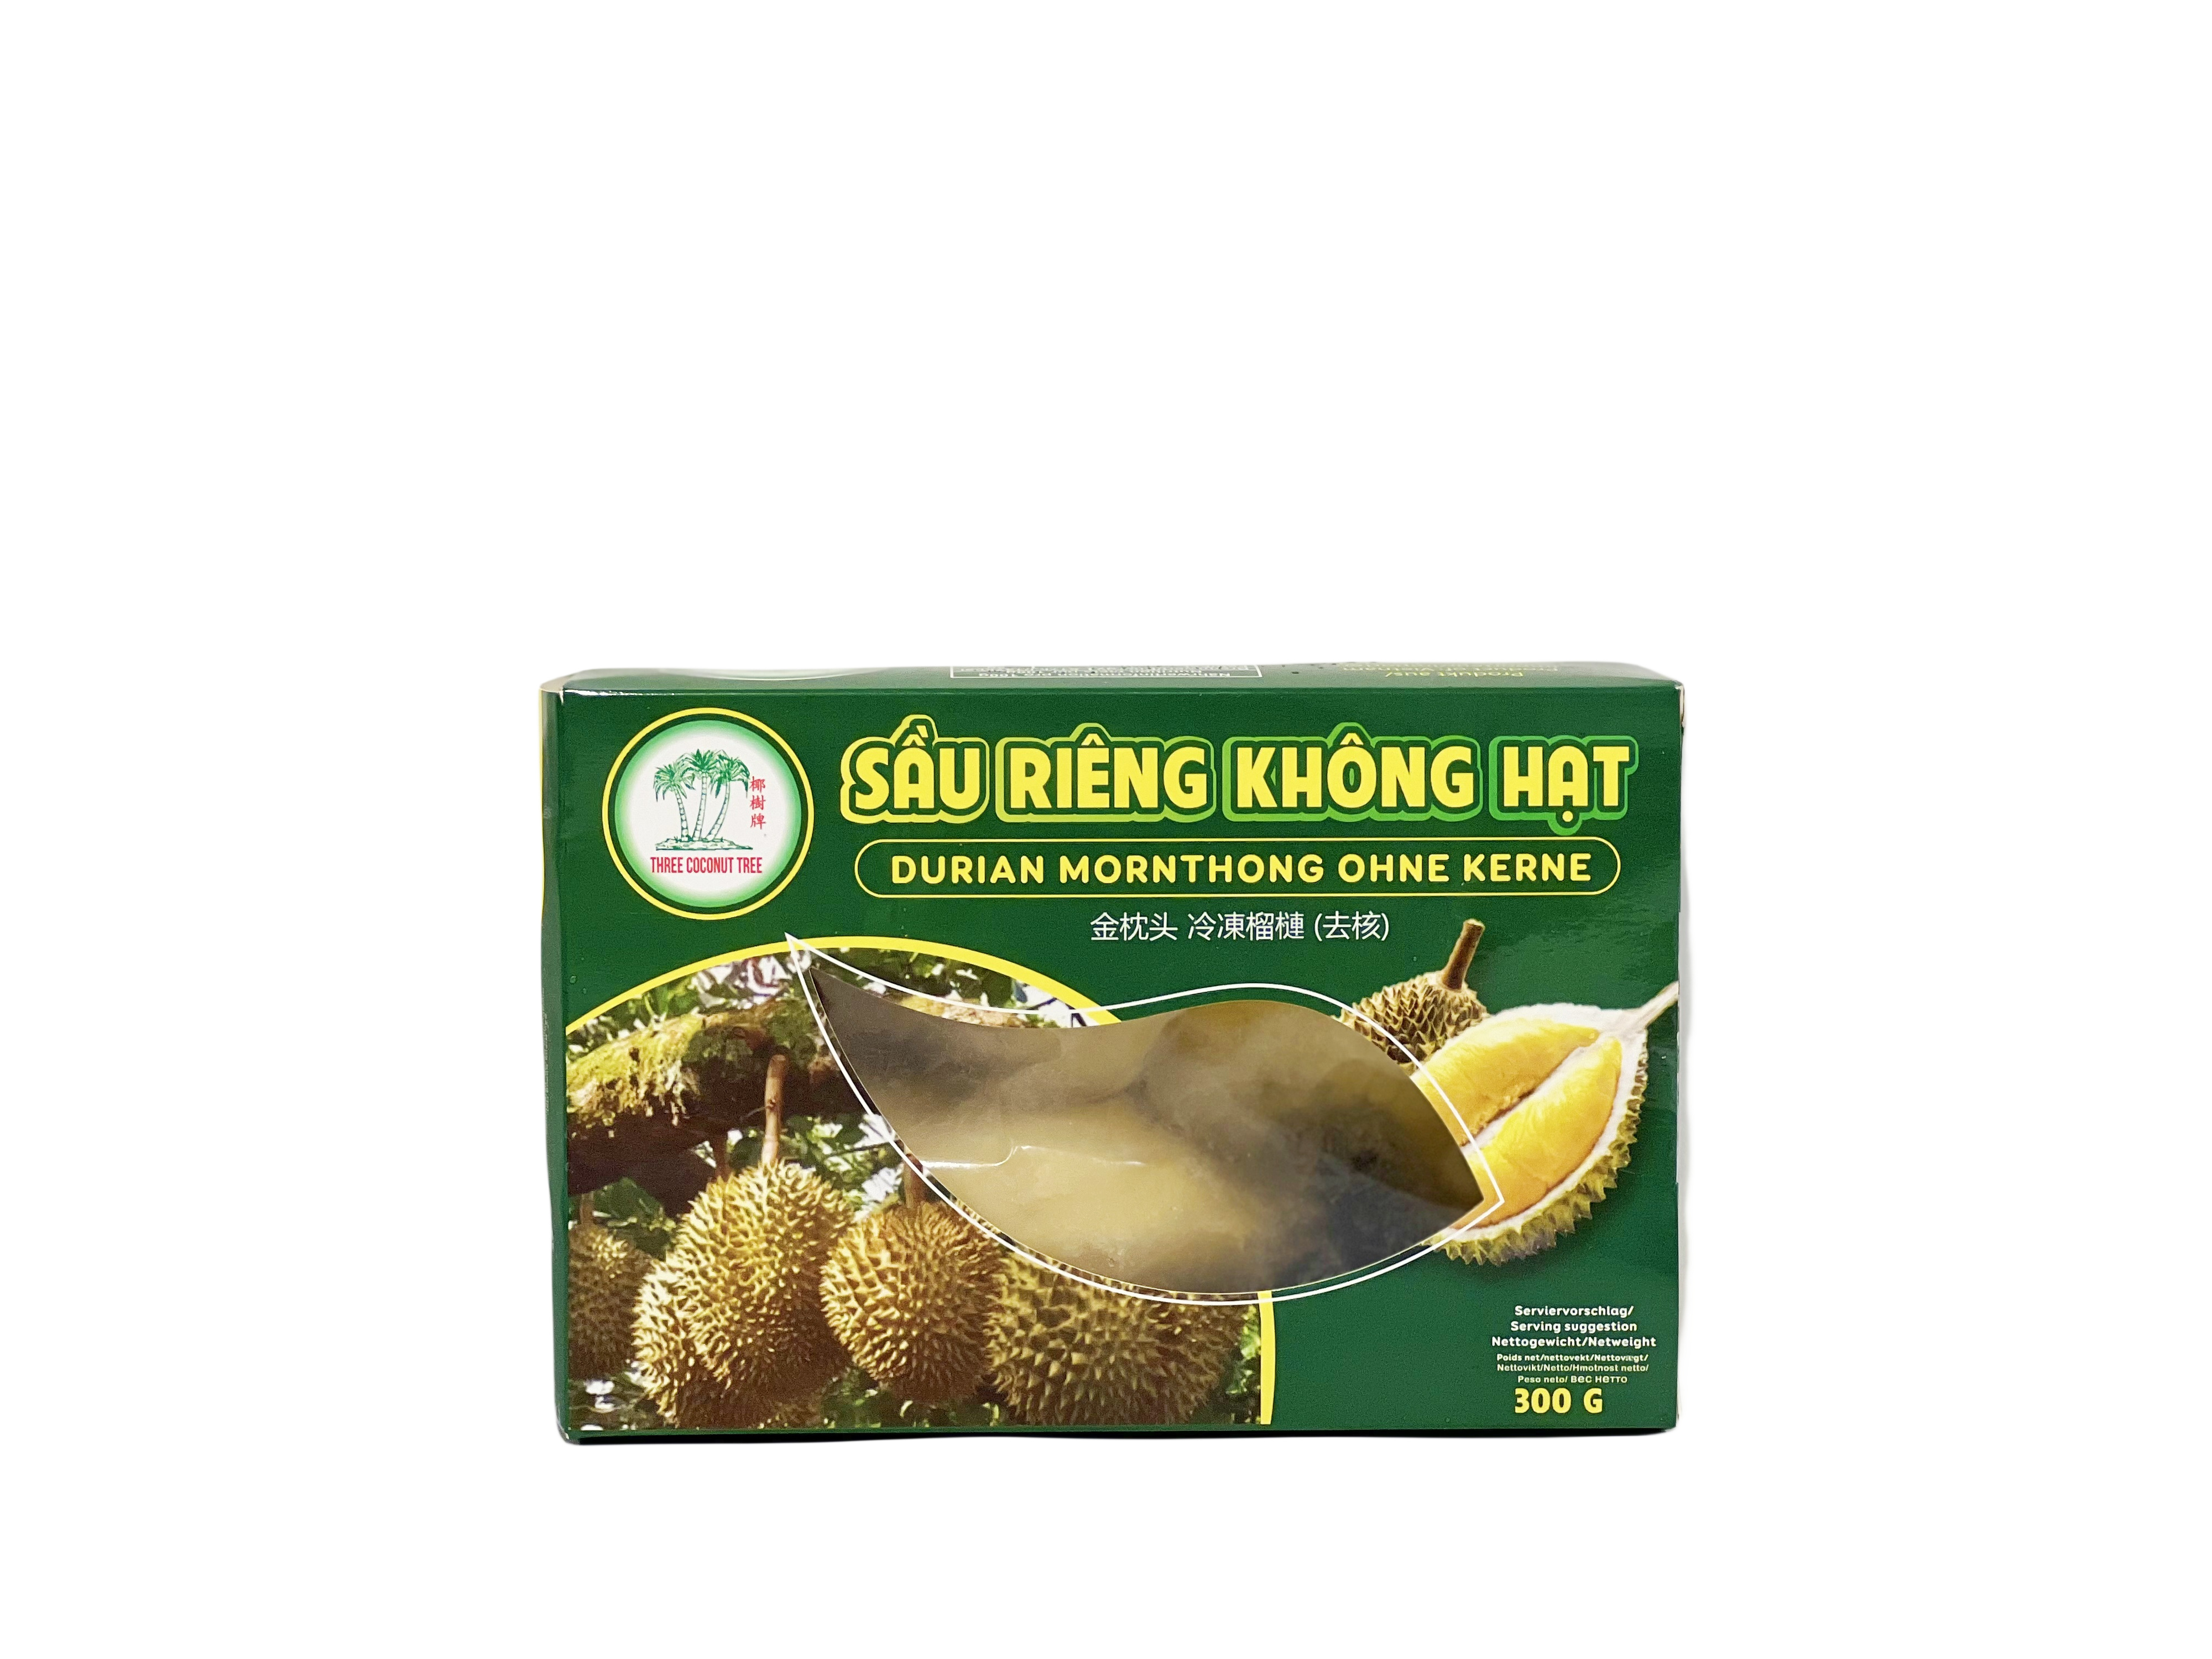 Durian Mornthong Frönfri Fryst 300g - TCT Vietnam